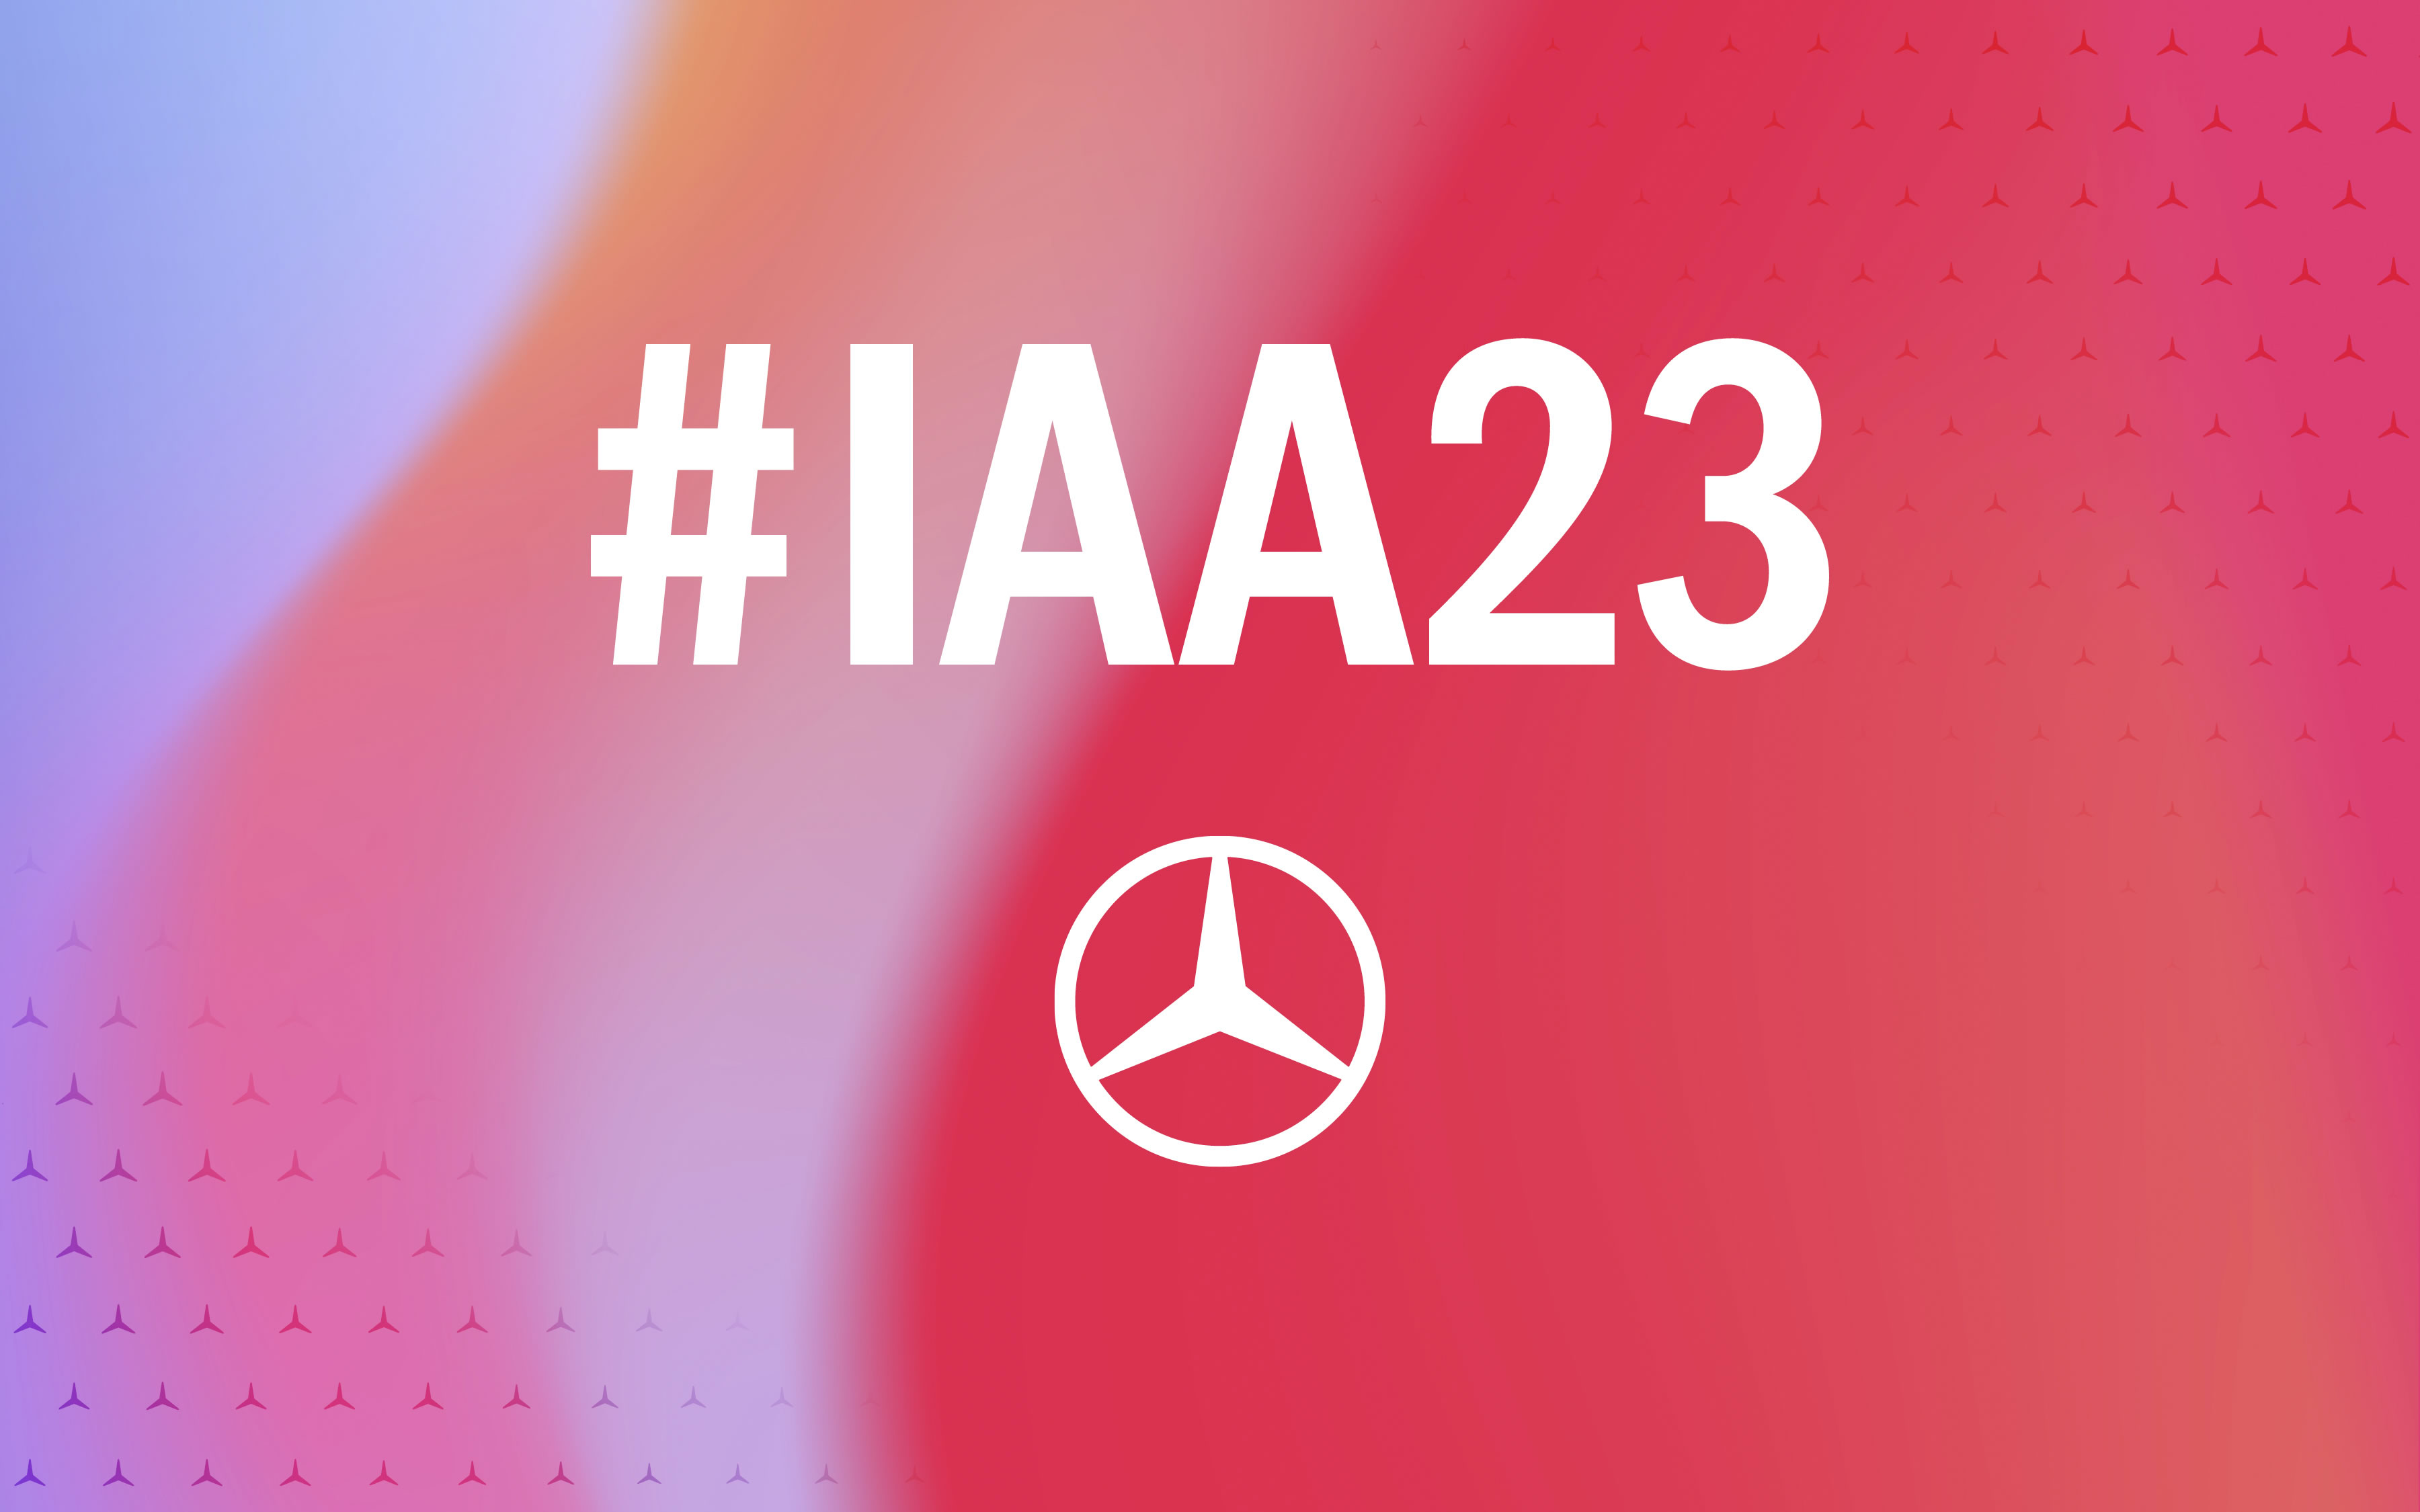 IAA MOBILITY 2023: priekopnícke koncepčné vozidlo nanovo definuje vstupný segment značky Mercedes-Benz